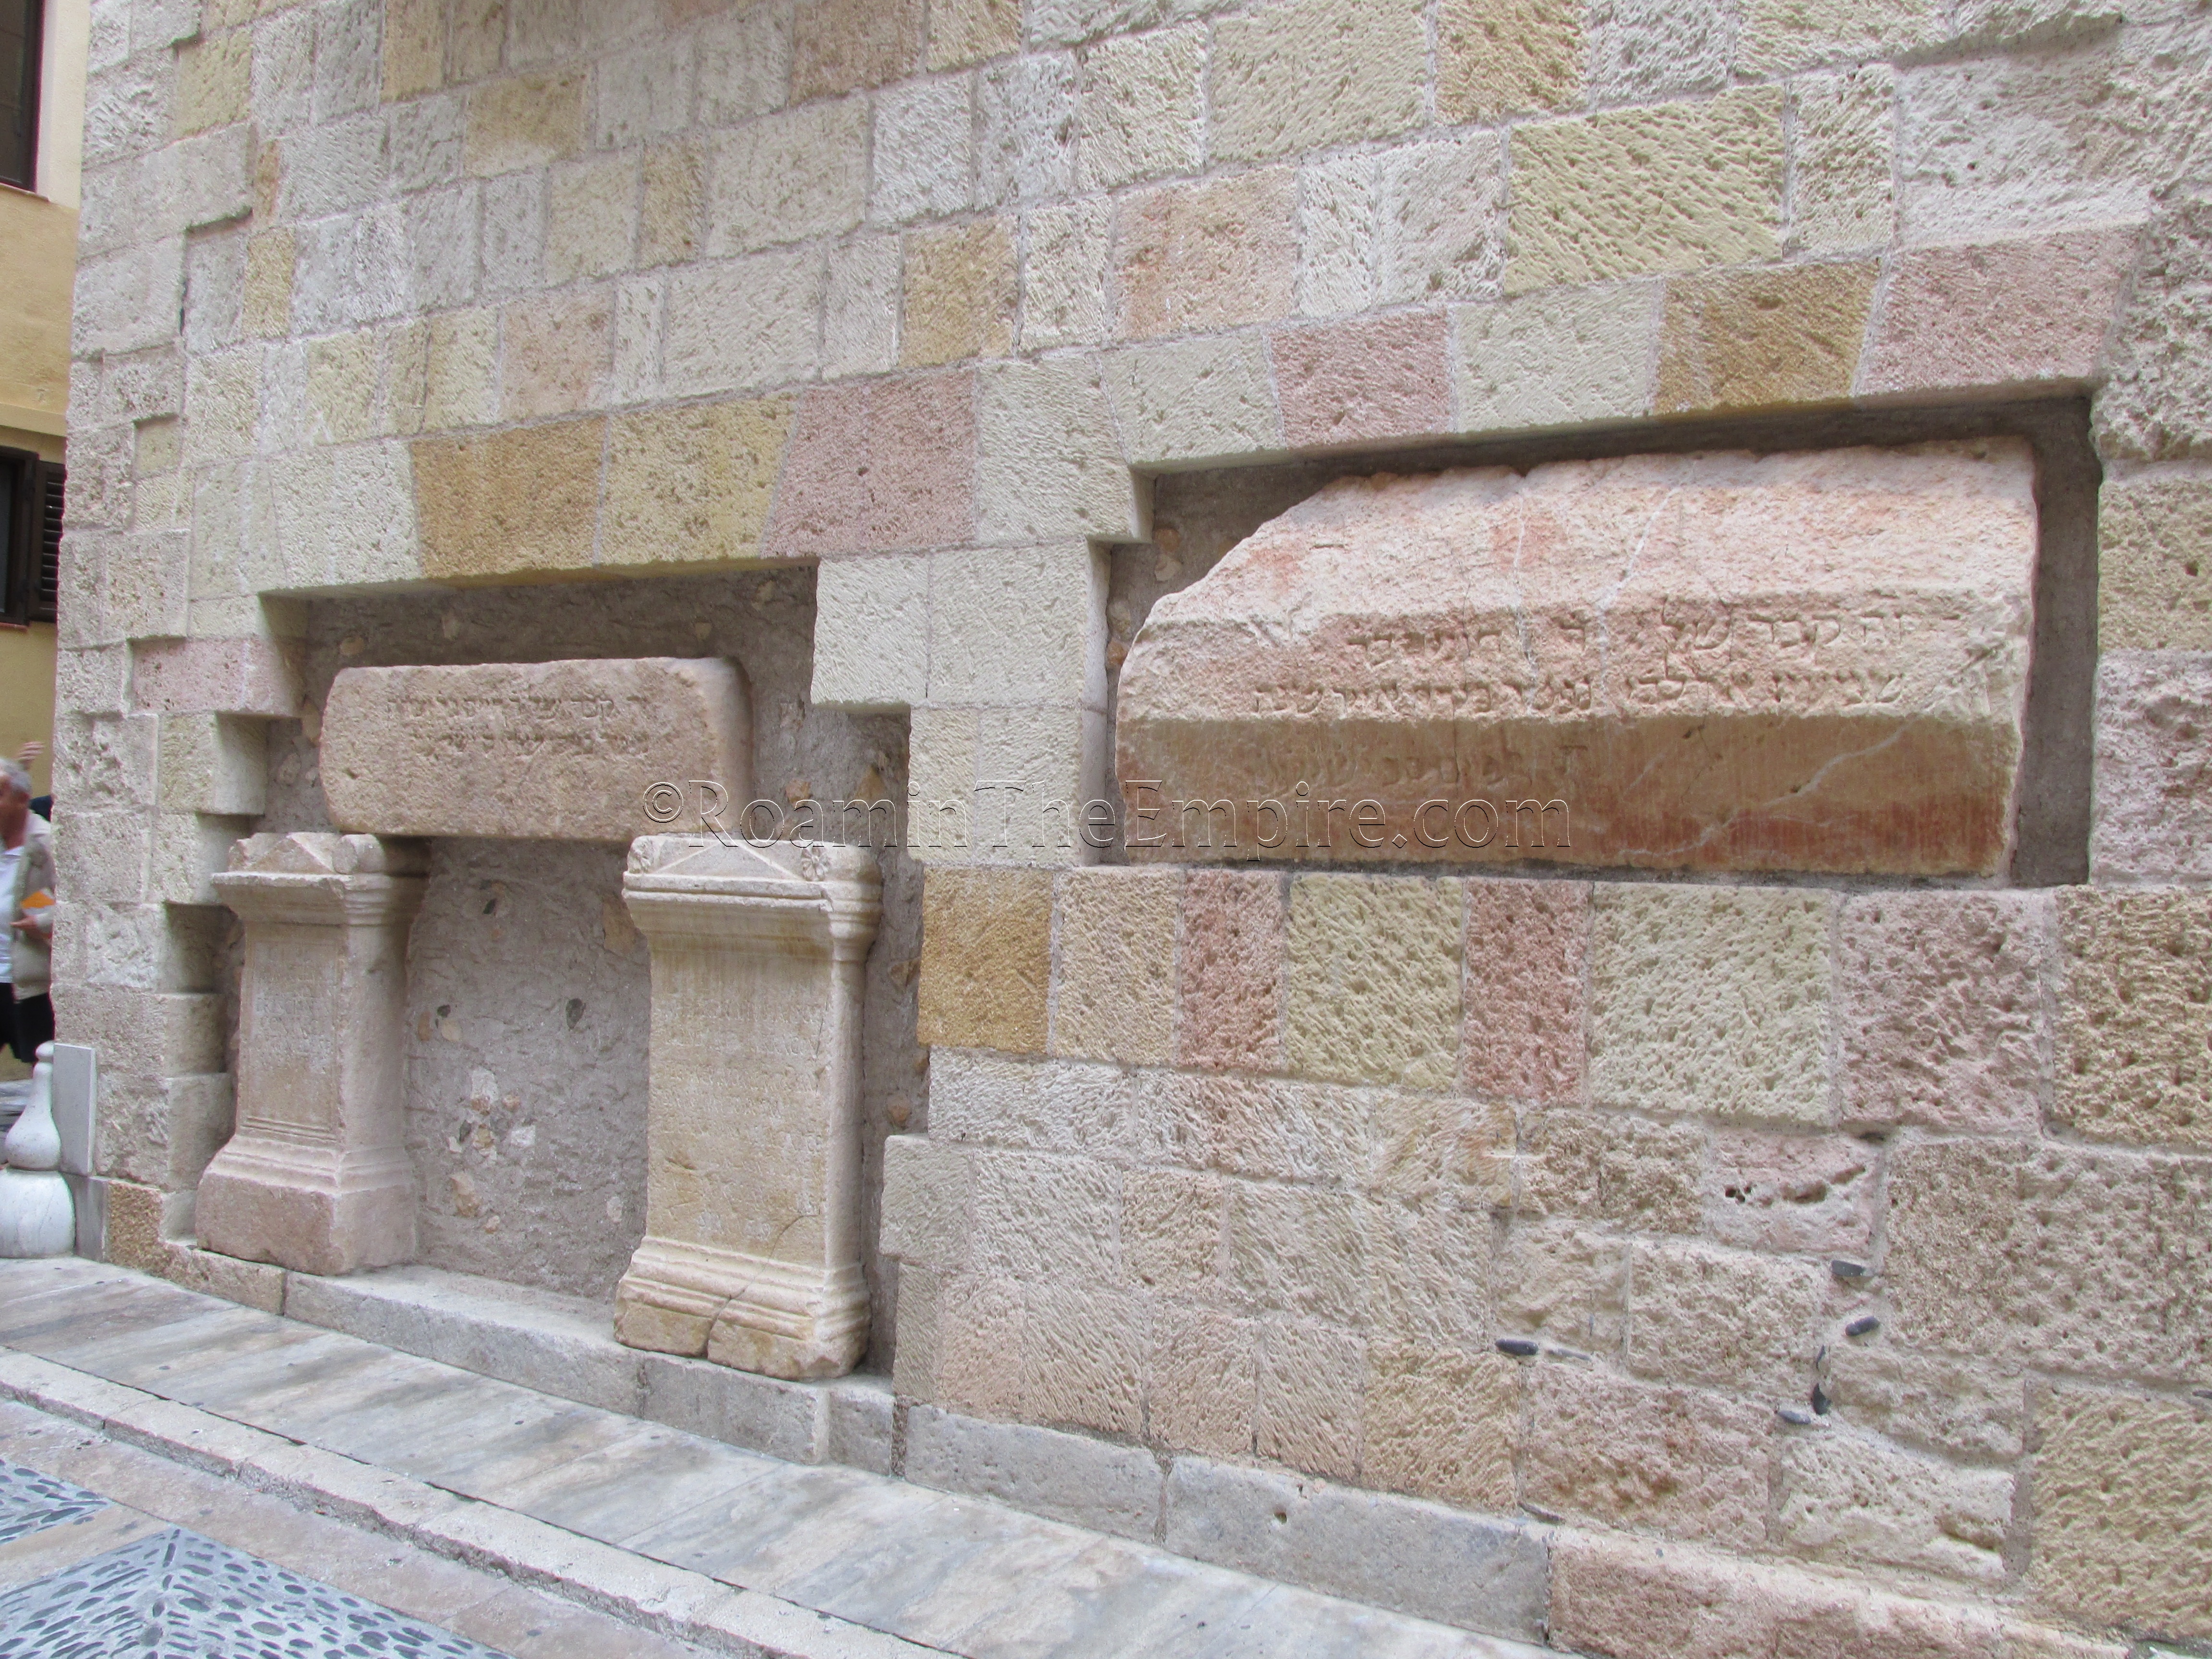 Replica inscriptions in the wall of Antigua Casa del Dega.